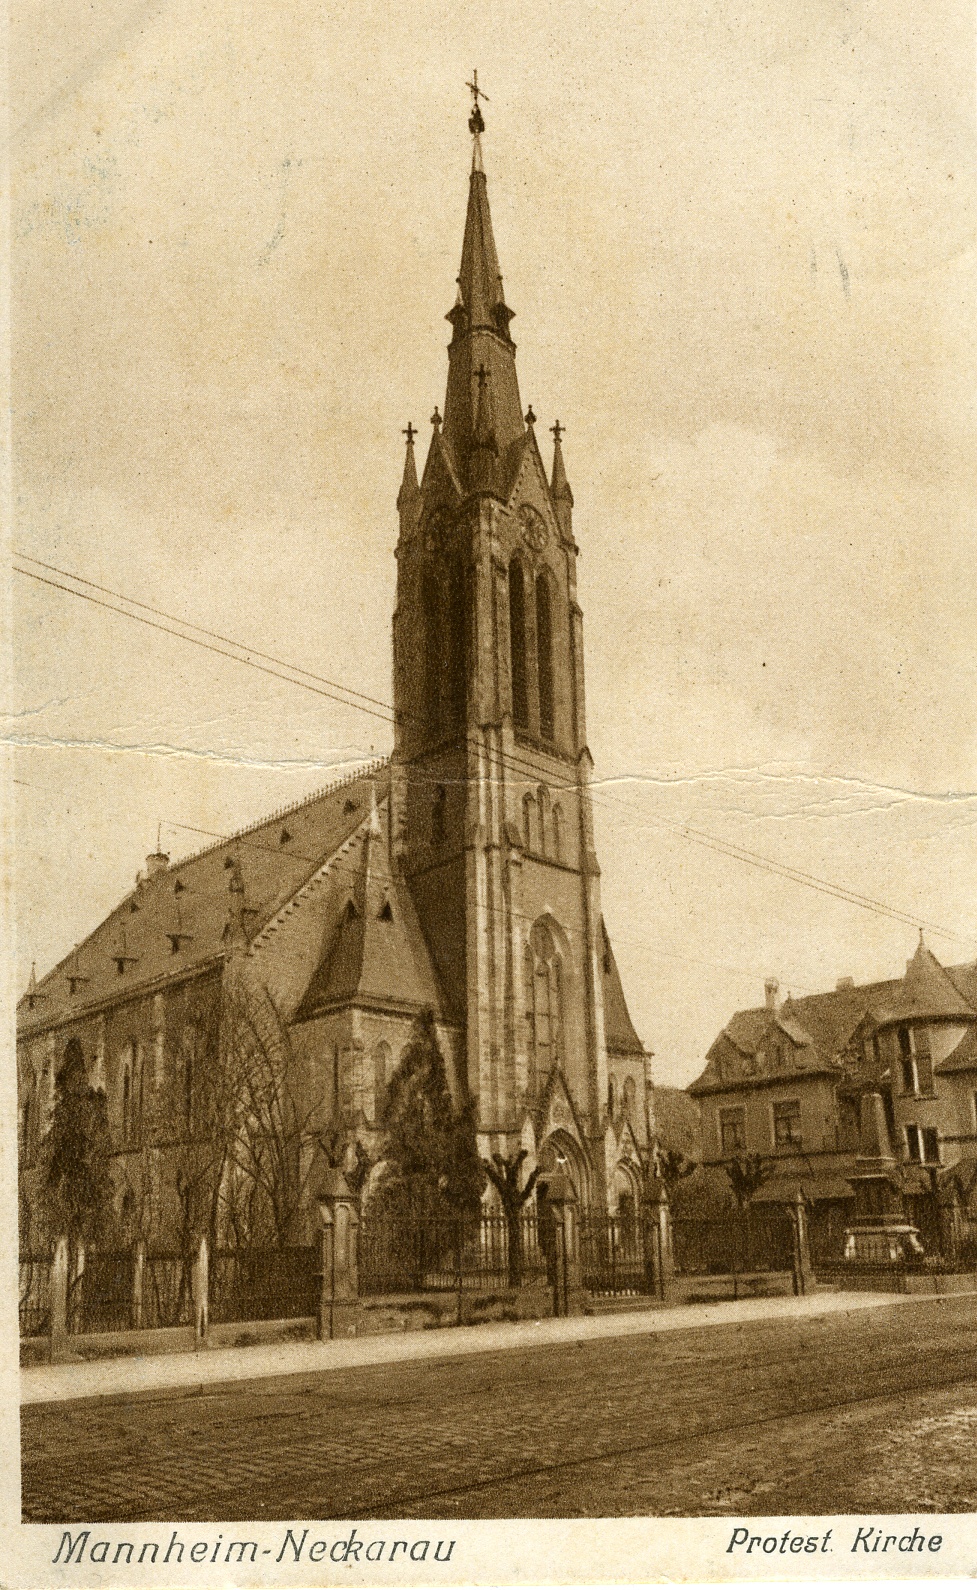 Postkarte Mannheim-Neckarau 1928 (Historisches Museum der Pfalz, Speyer CC BY)